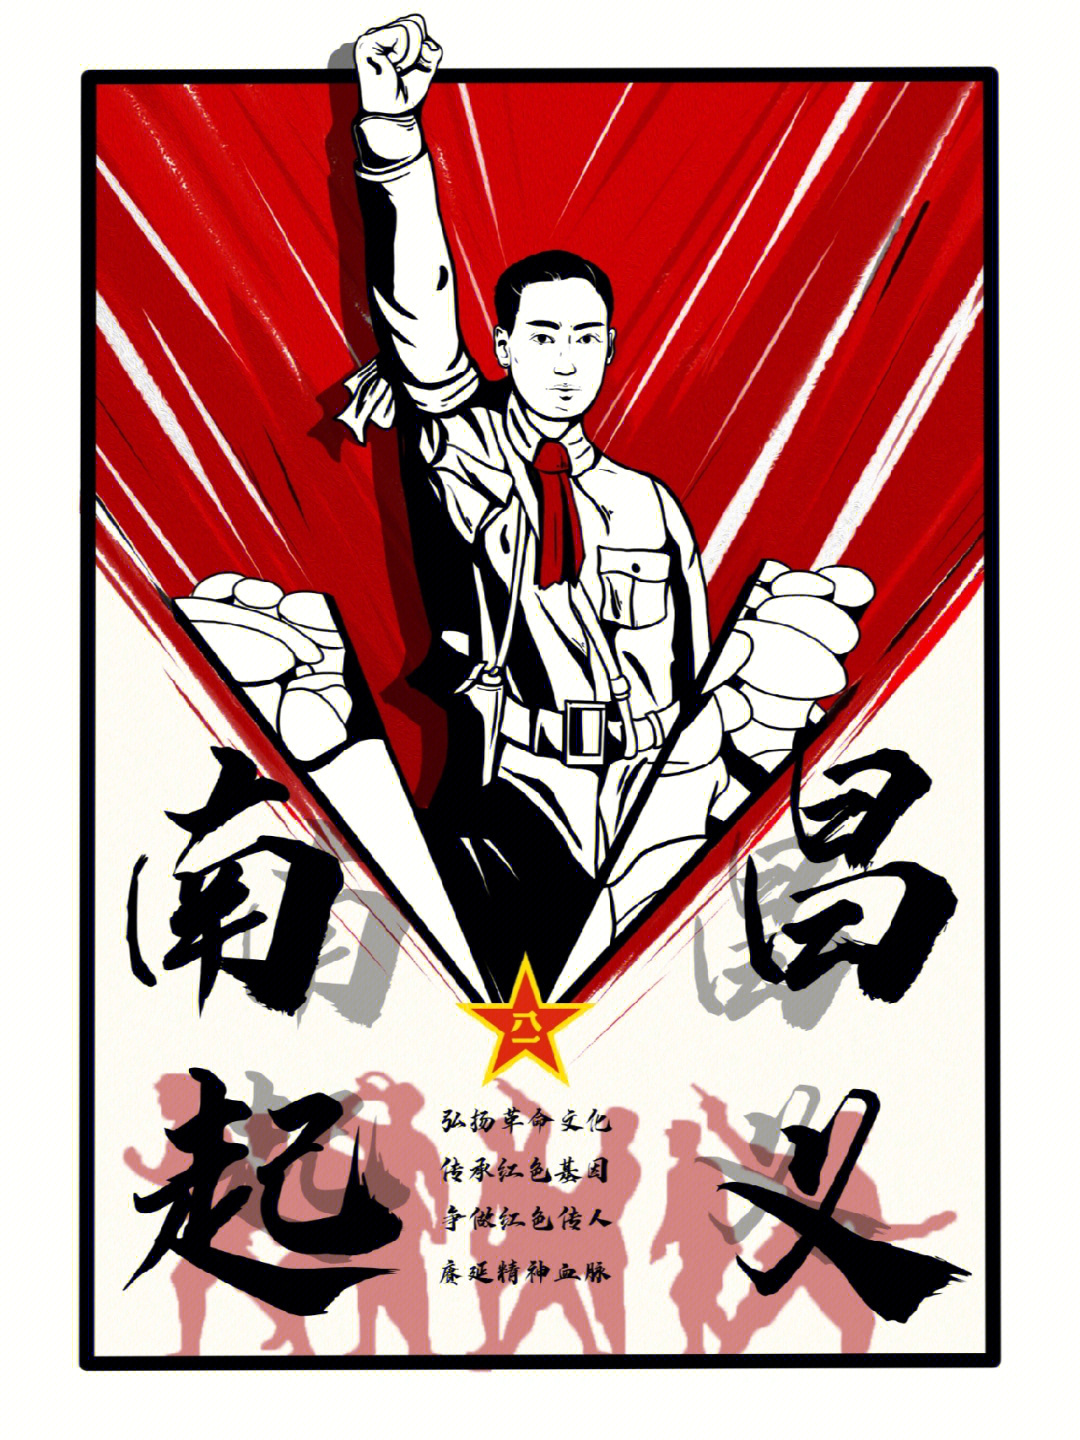 南昌人做了一个关于南昌红色文化主题的插画觉得很有意义已获一等奖